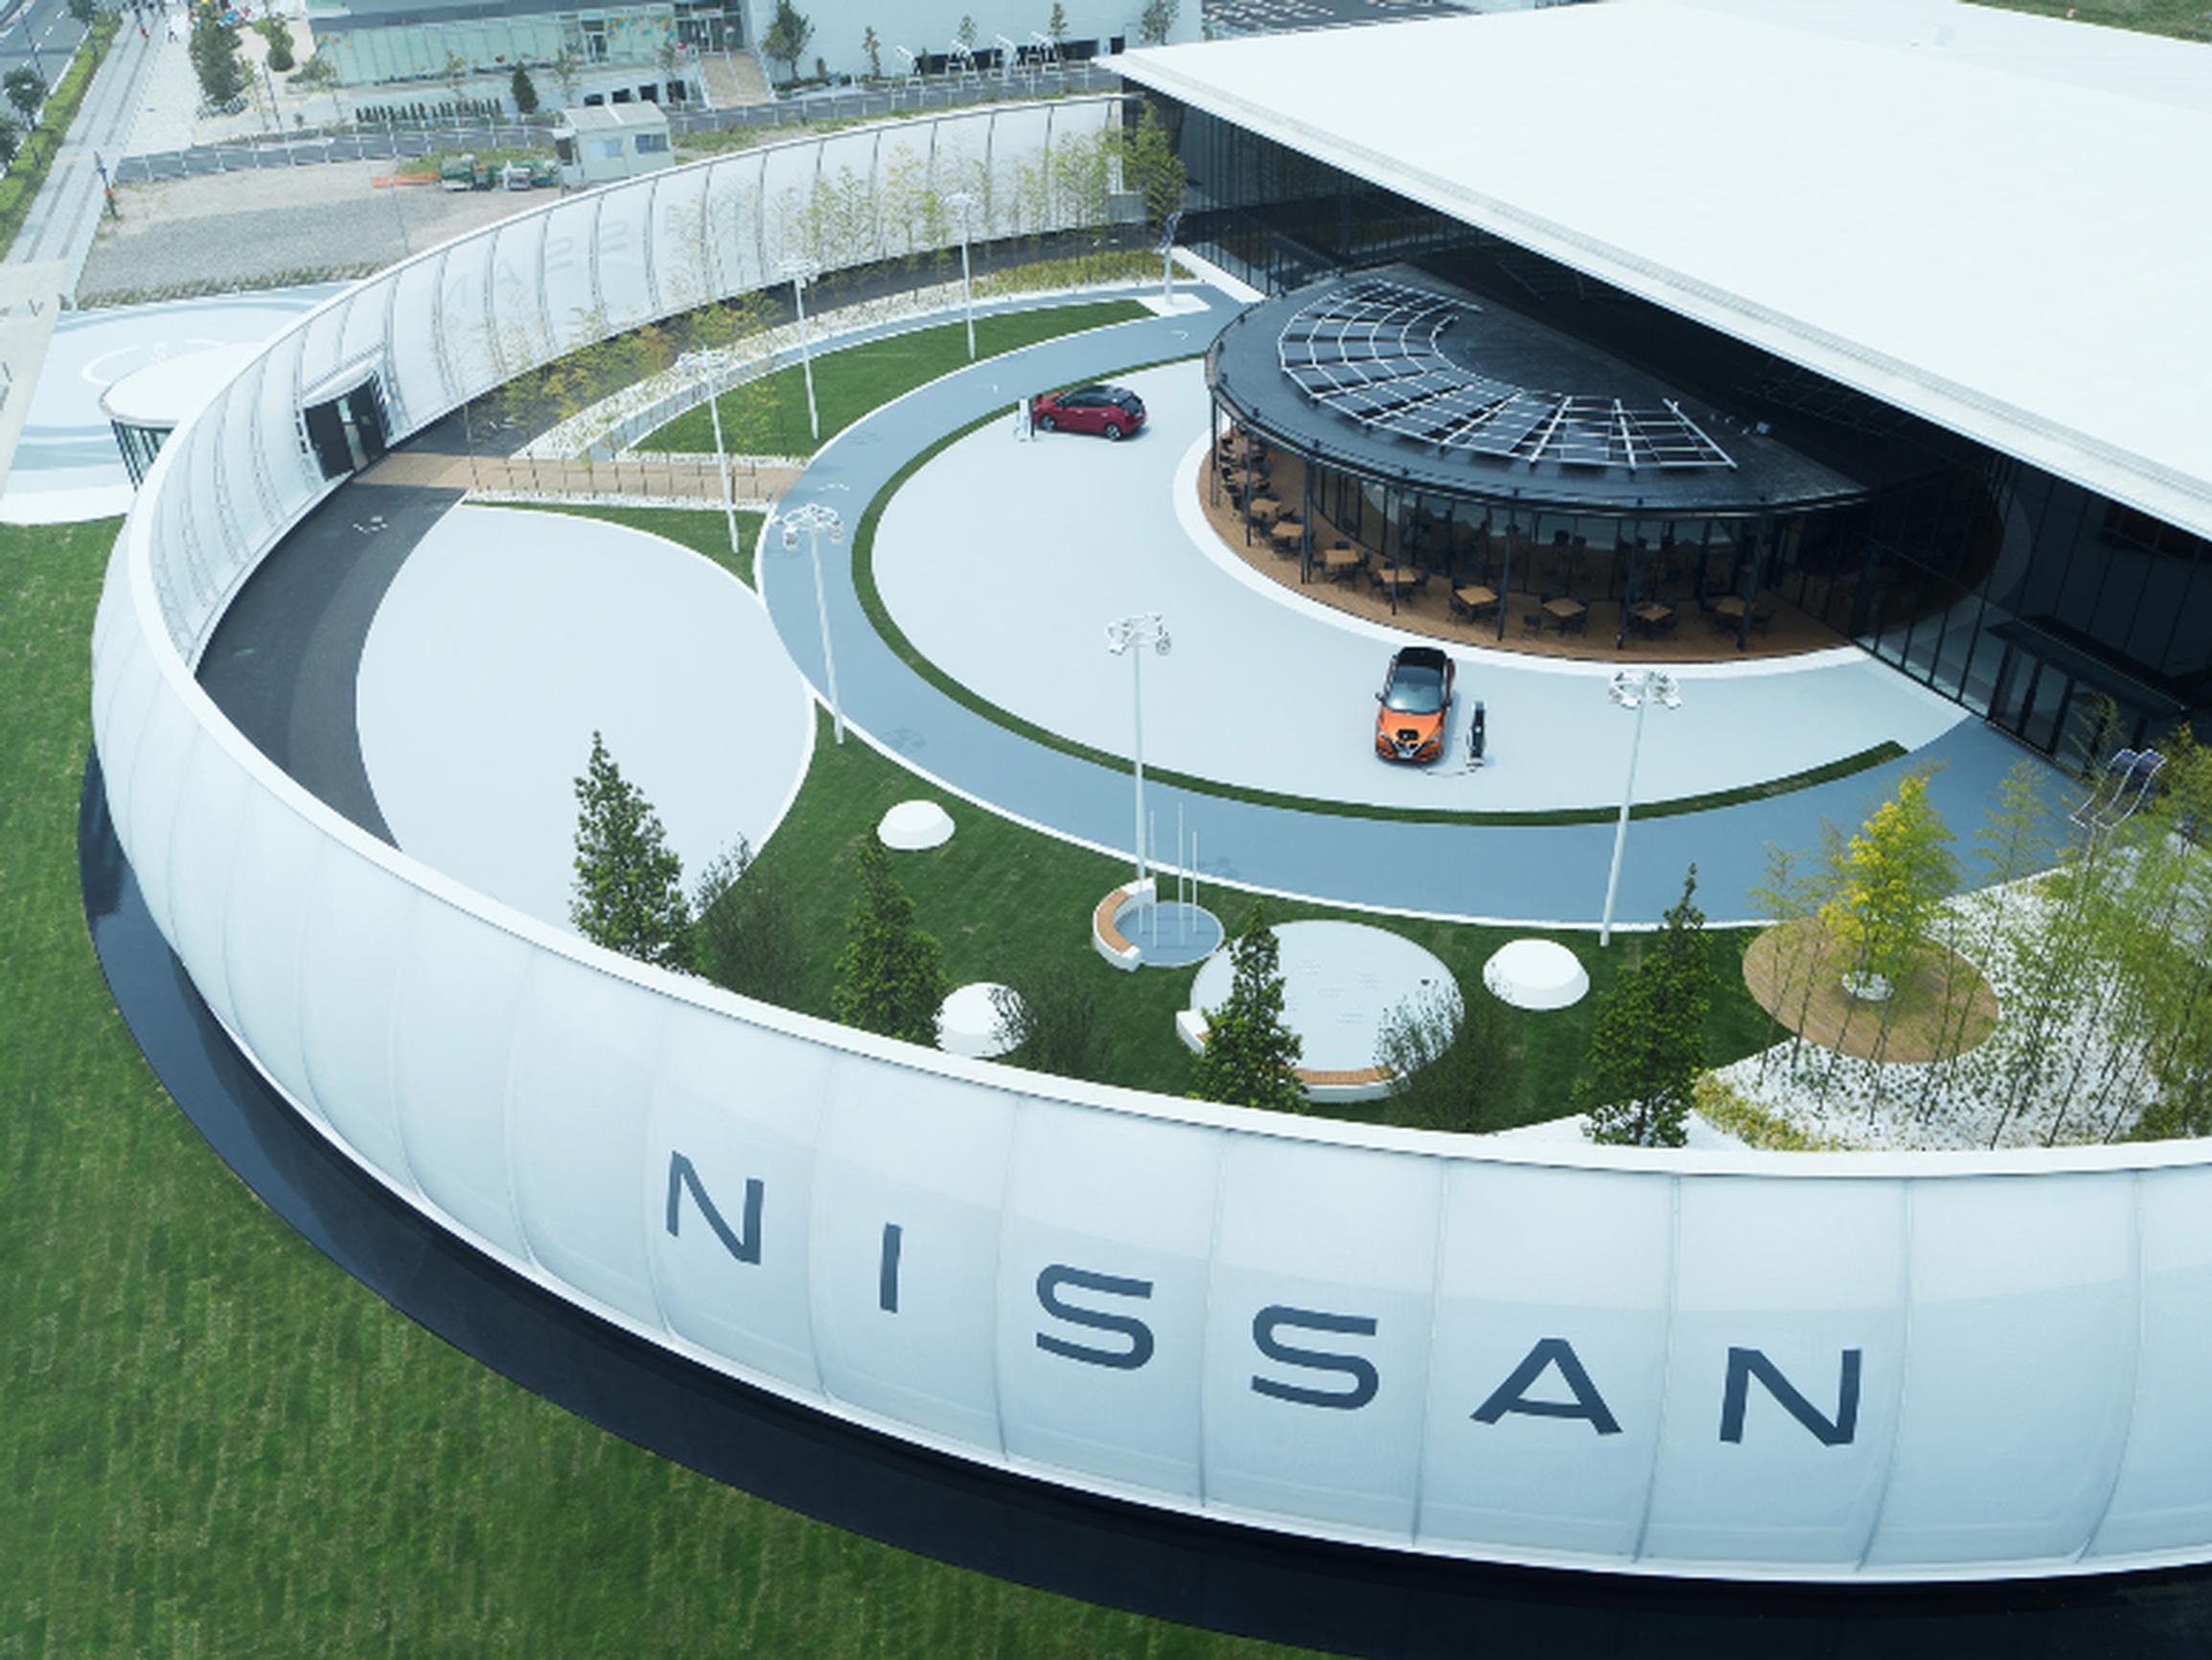 The Nissan Pavilion in Yokohama, Japan